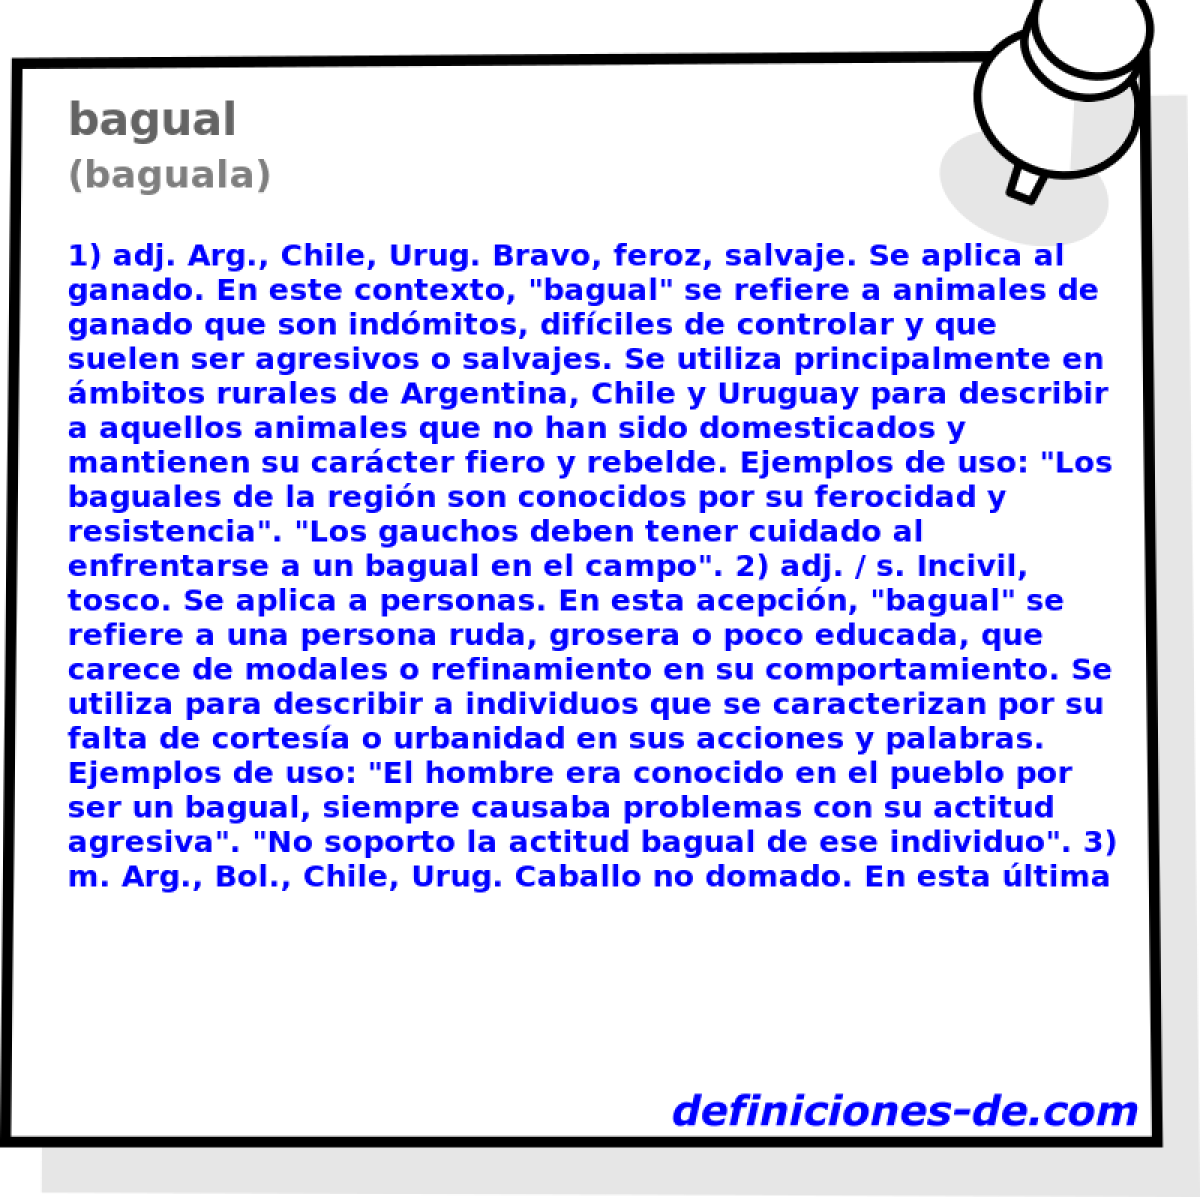 bagual (baguala)